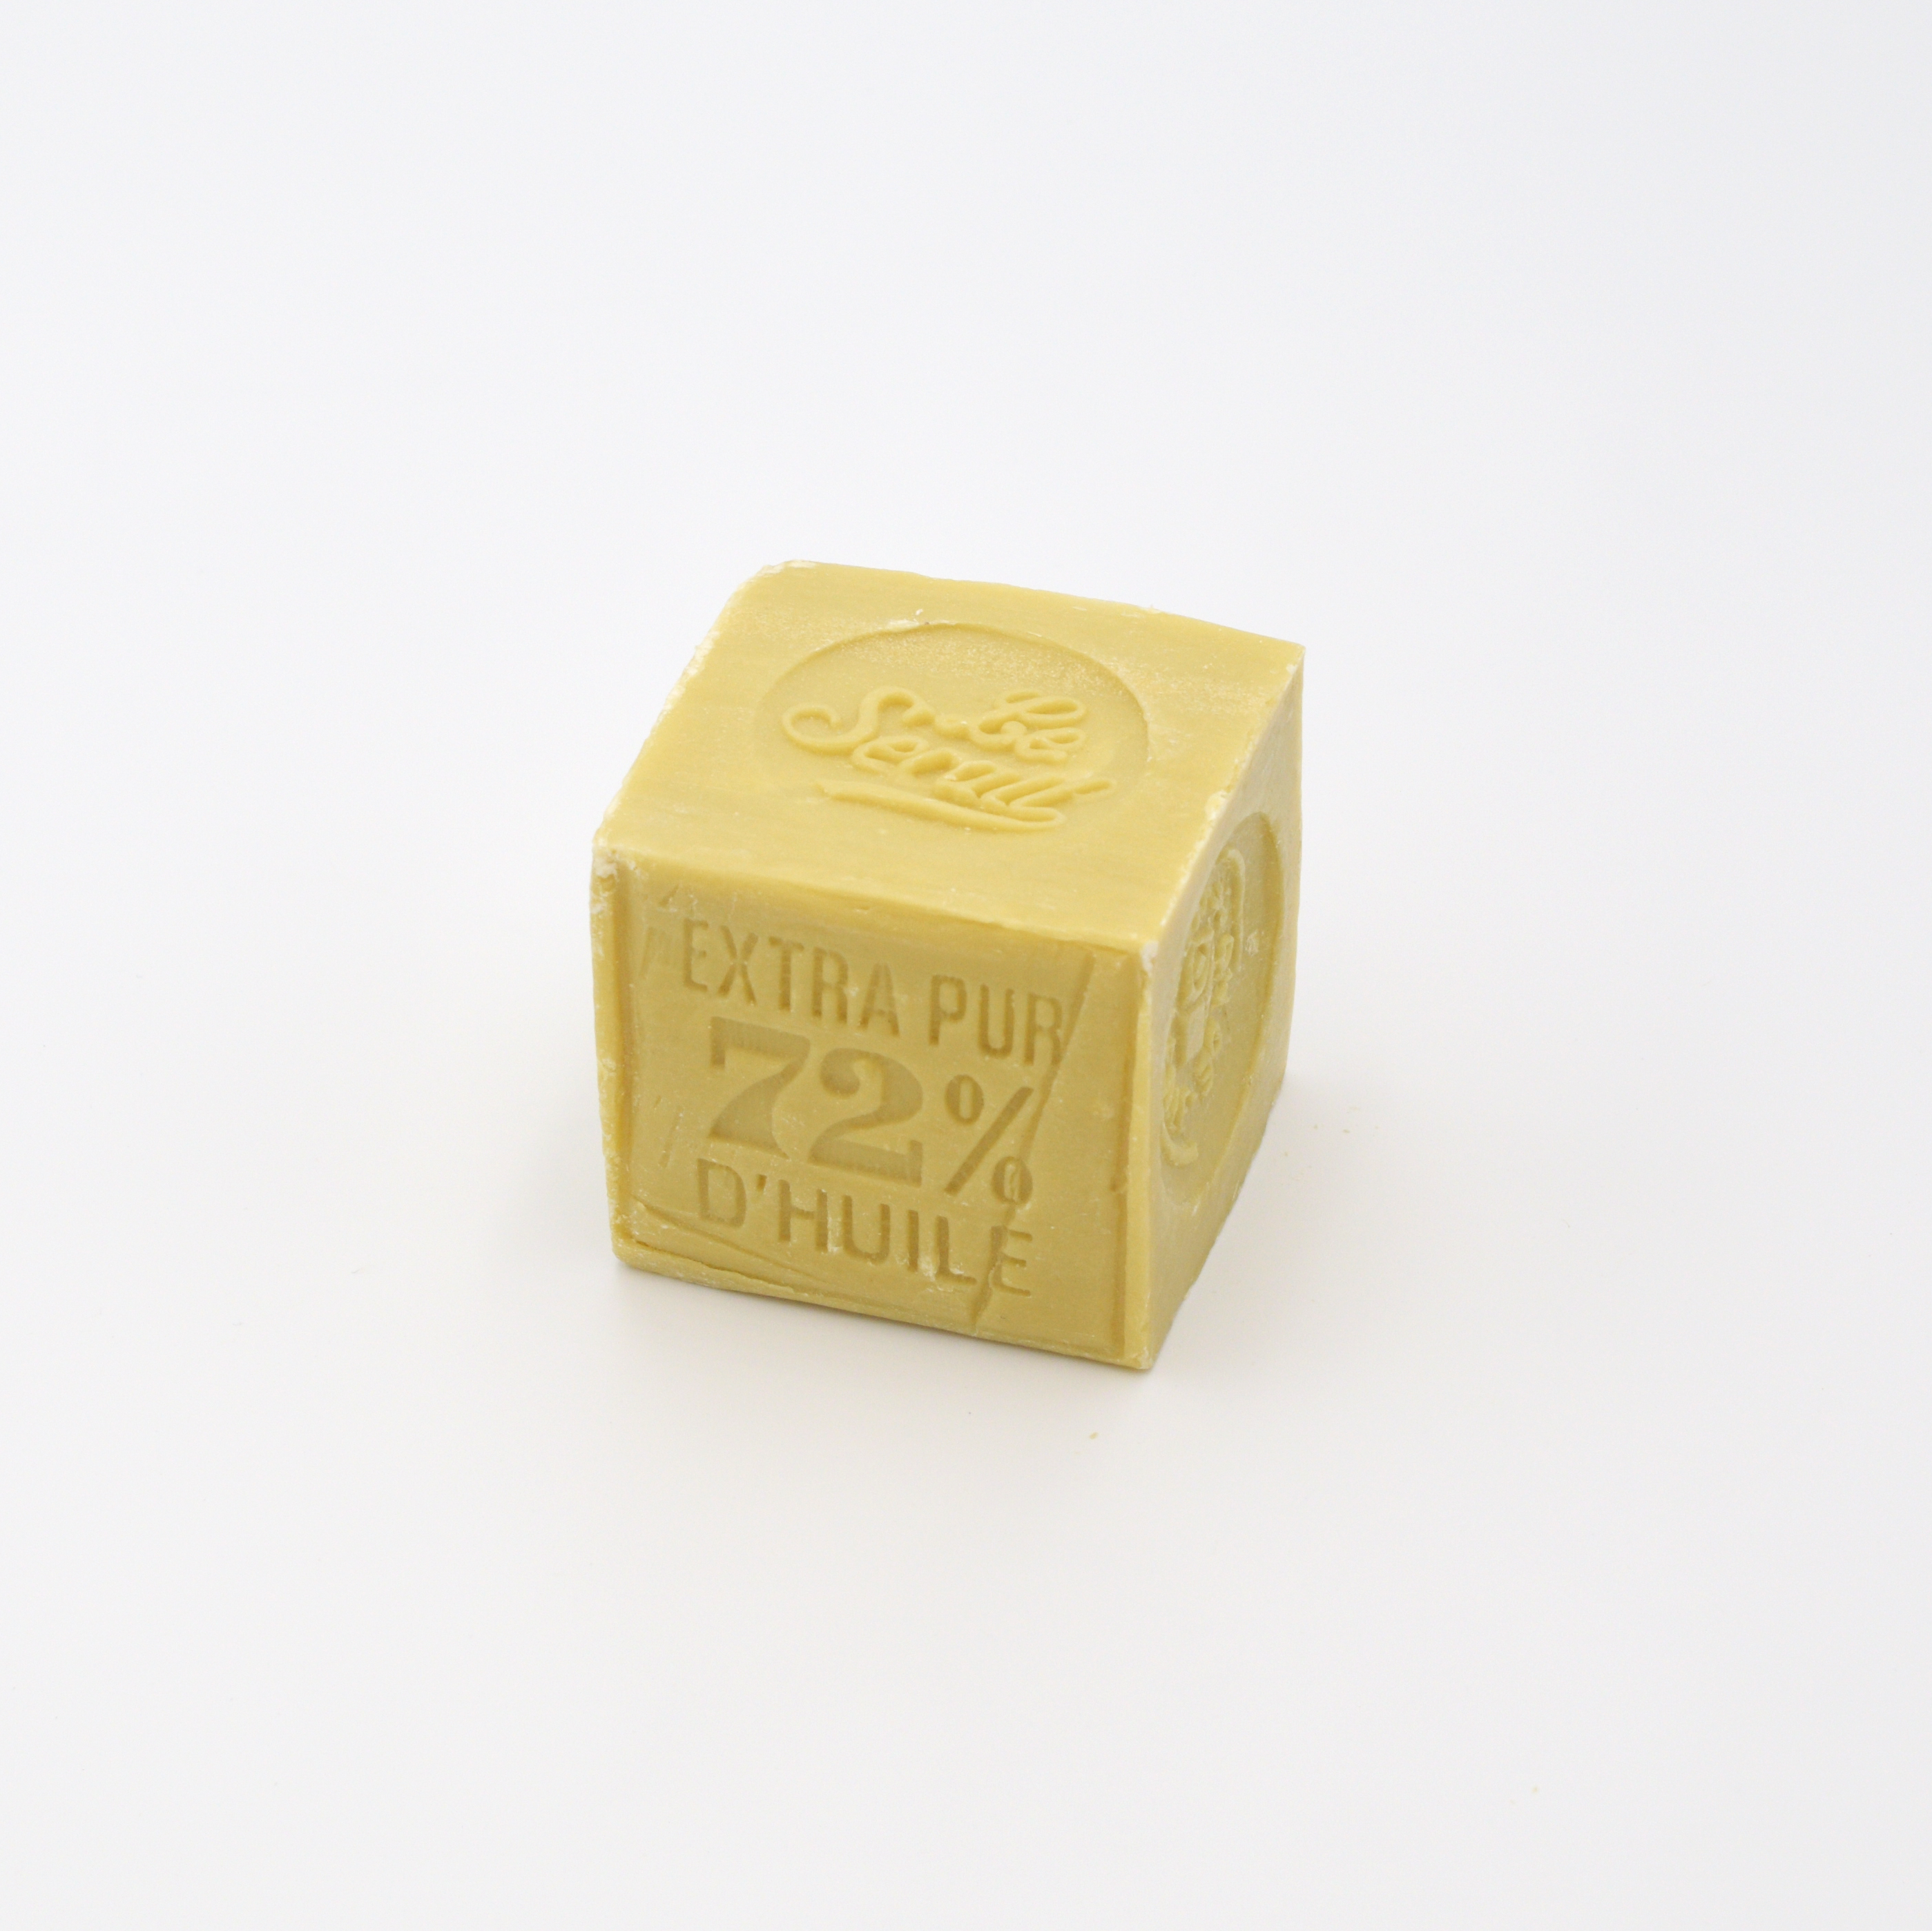 Savon de Marseille Soap, 300g Cube